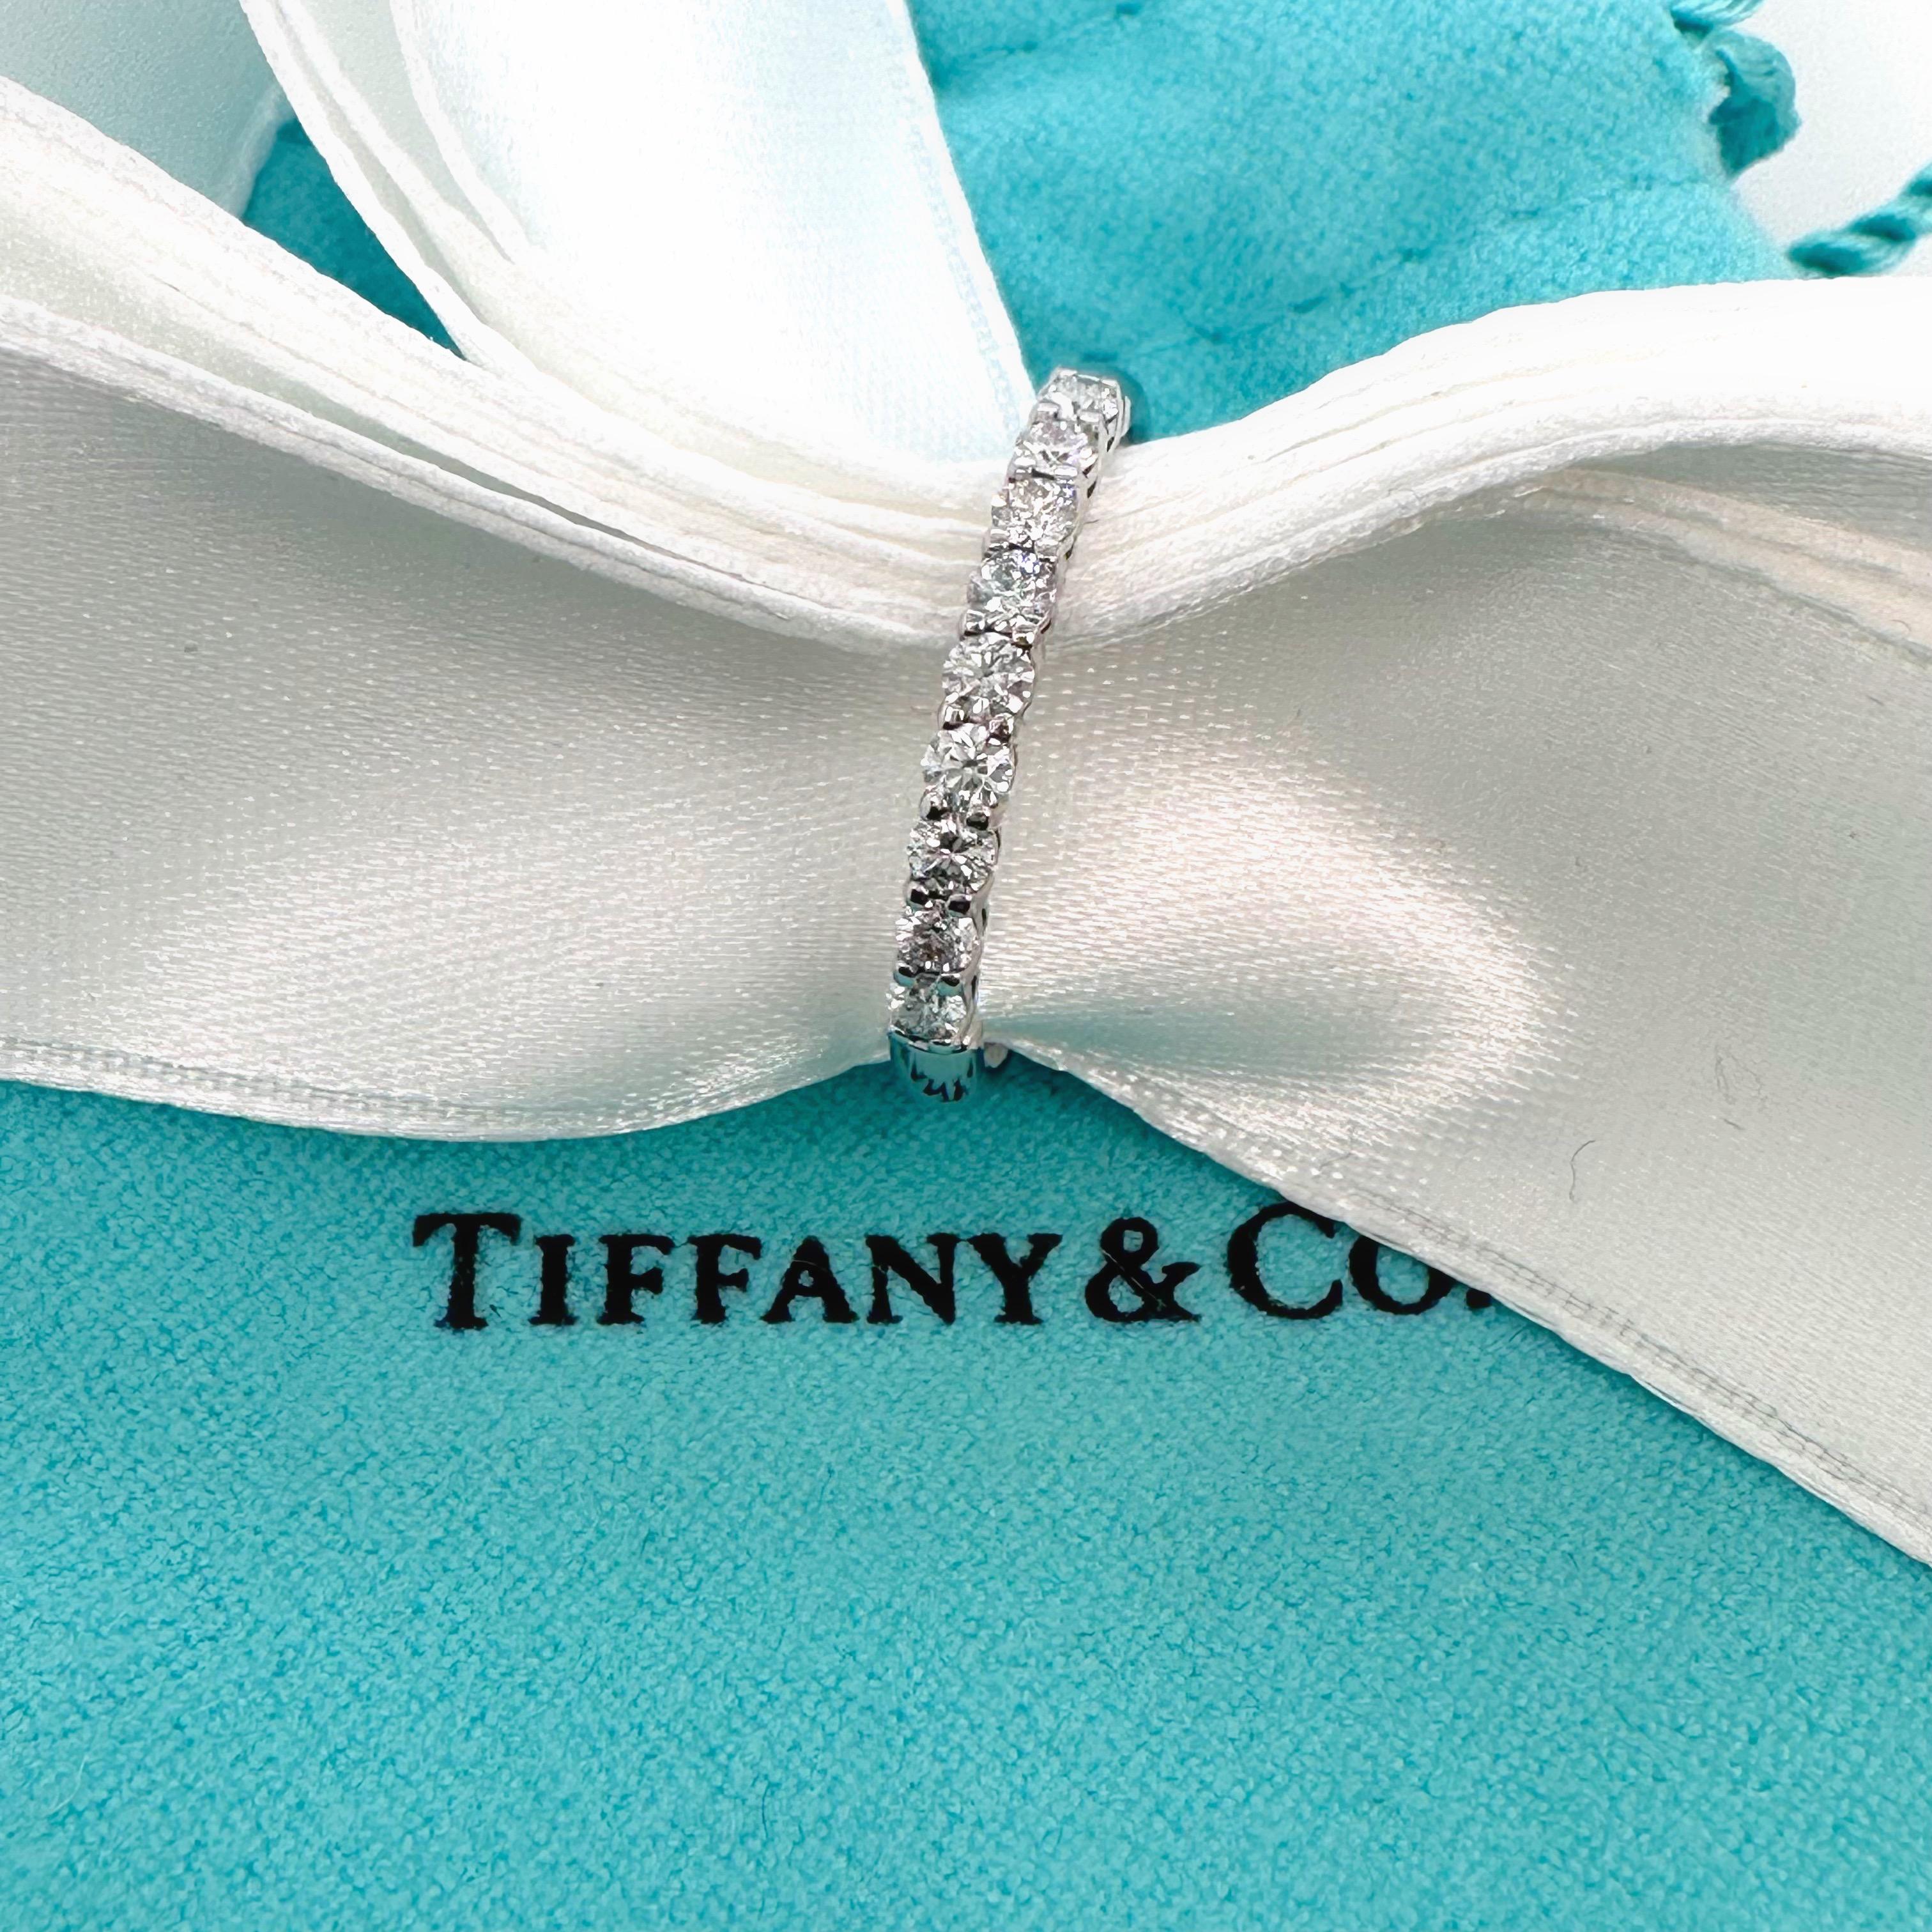 Tiffany & Co. Bandeau à diamants Forever Half Circle
Le style :  Bande
Numéro de référence :  600034405
Métal :  Platine PT950
Taille :  6,75 de taille
Mesures :  2.2 mm
TCW :  0,27 tcw
Le diamant principal :  9 diamants ronds Brilliante
Hallmark : 